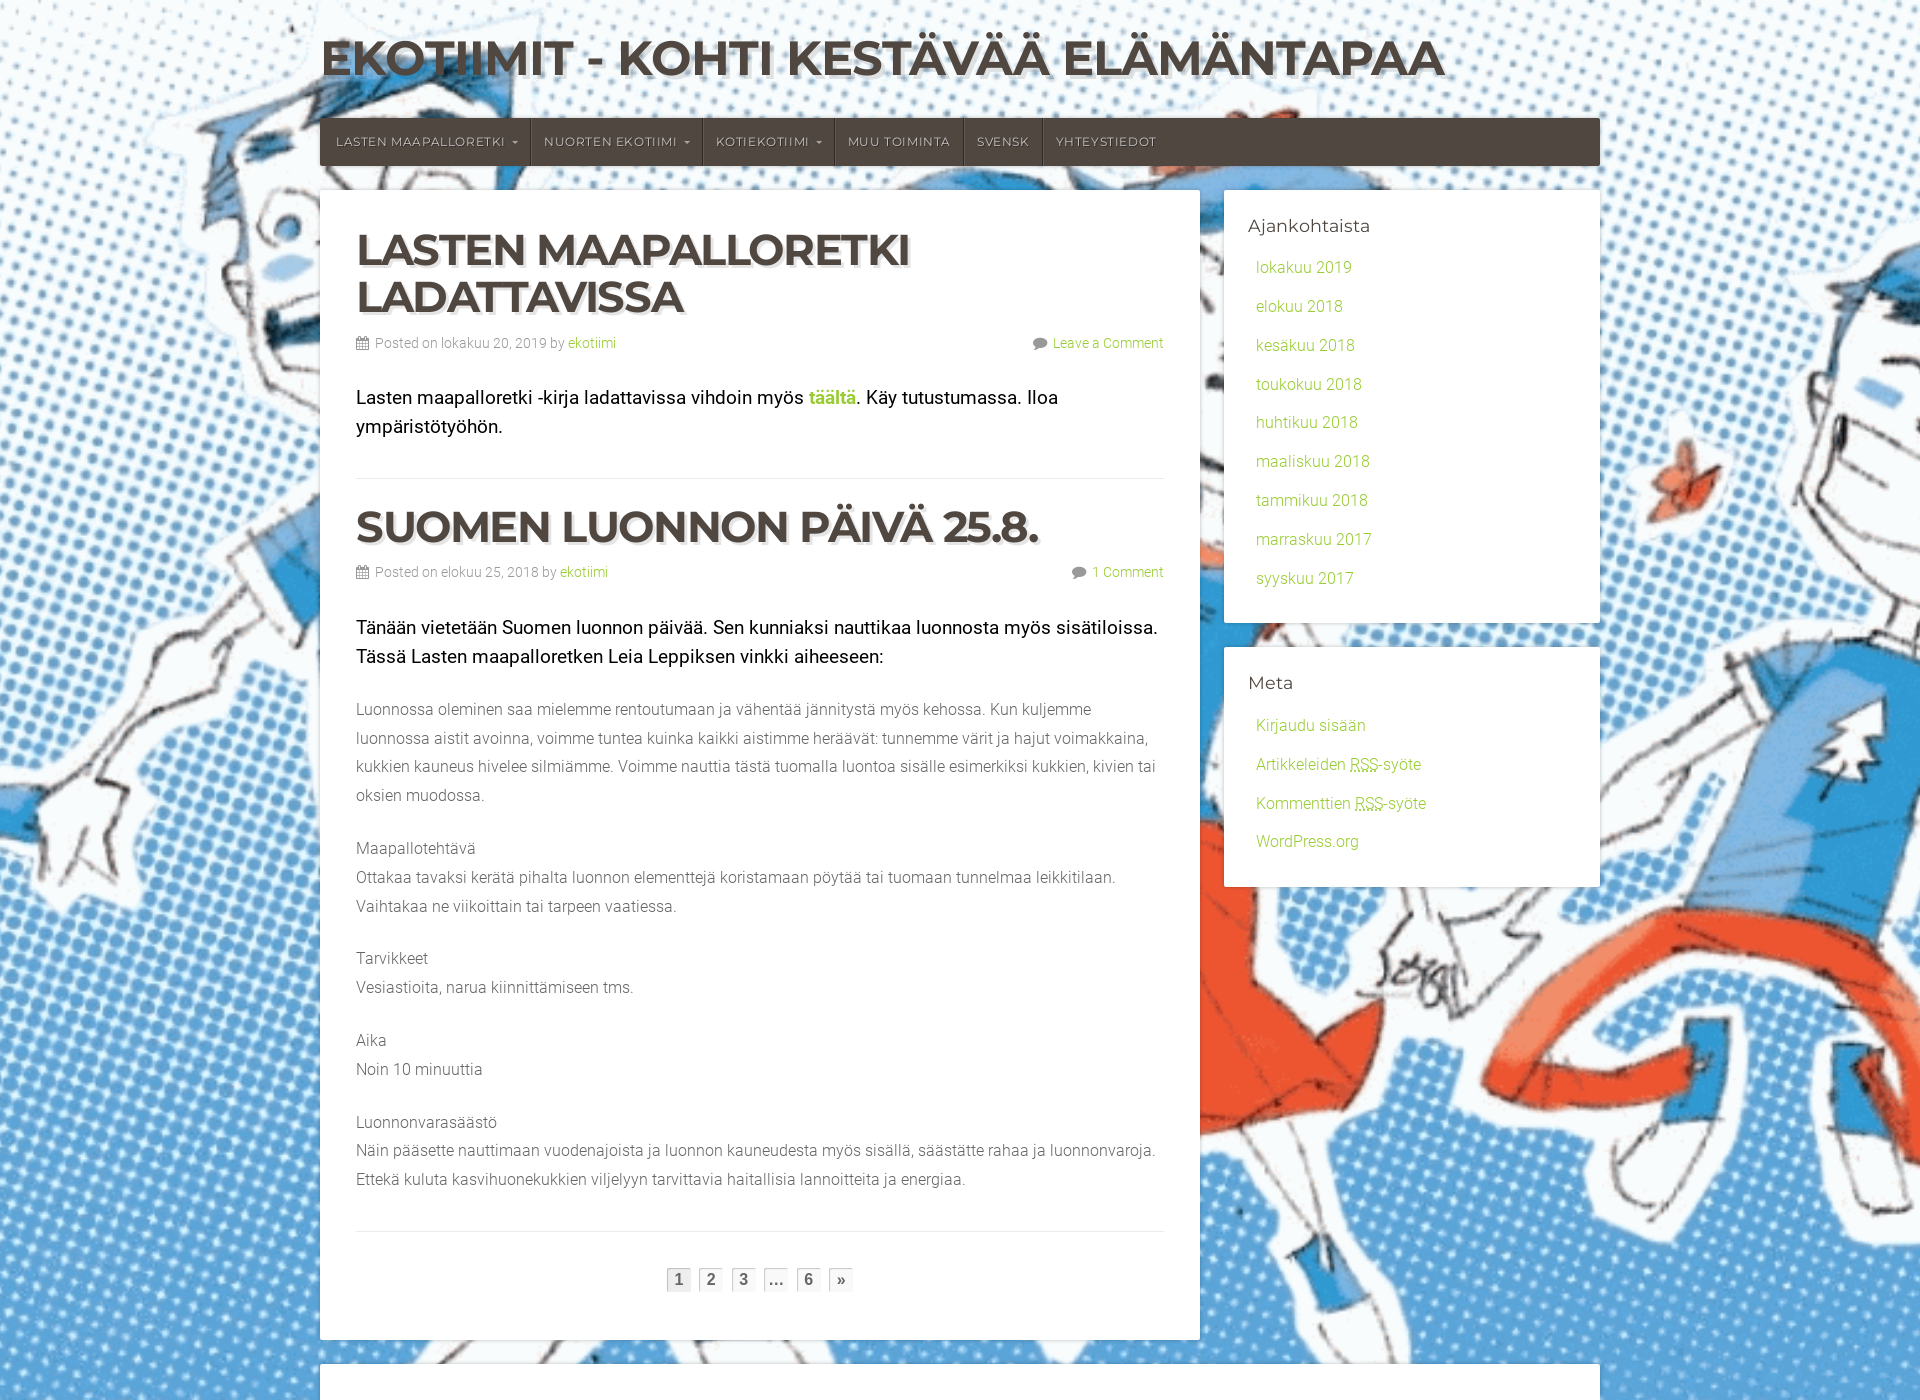 Näyttökuva ekotiimi.fi